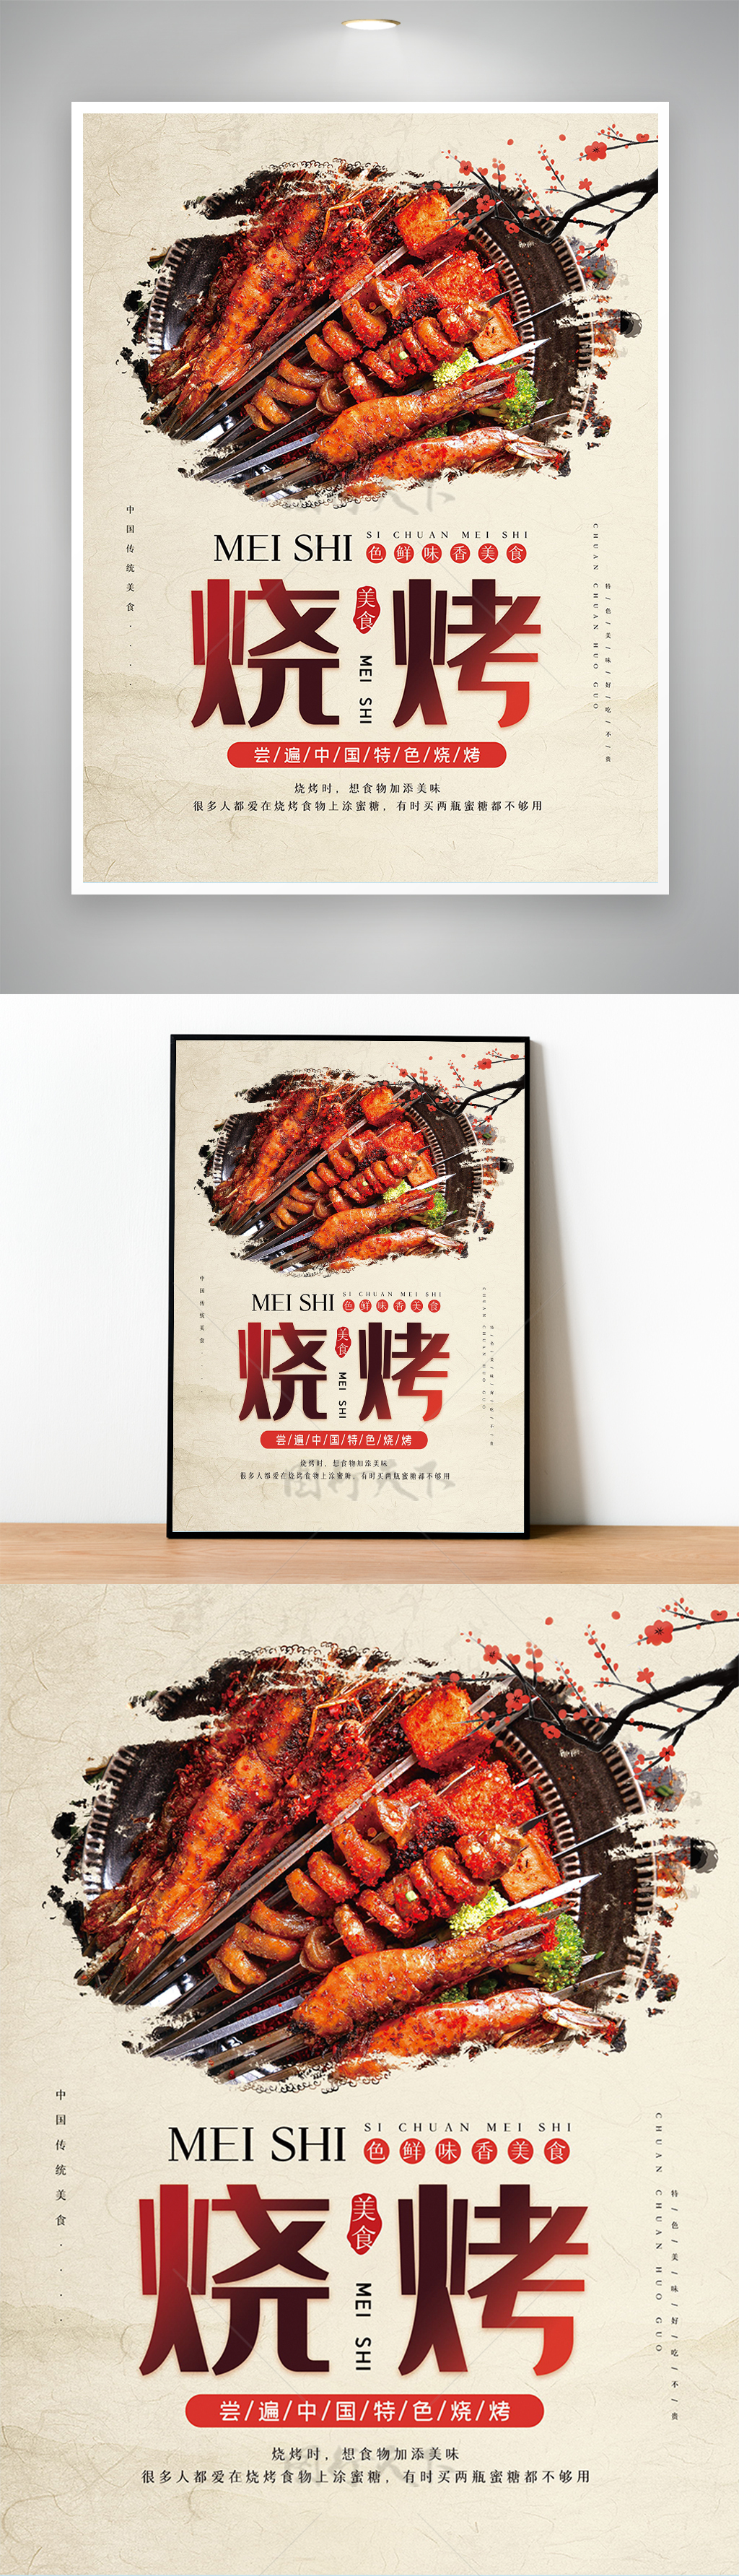 米色烧烤店宣传促销海报